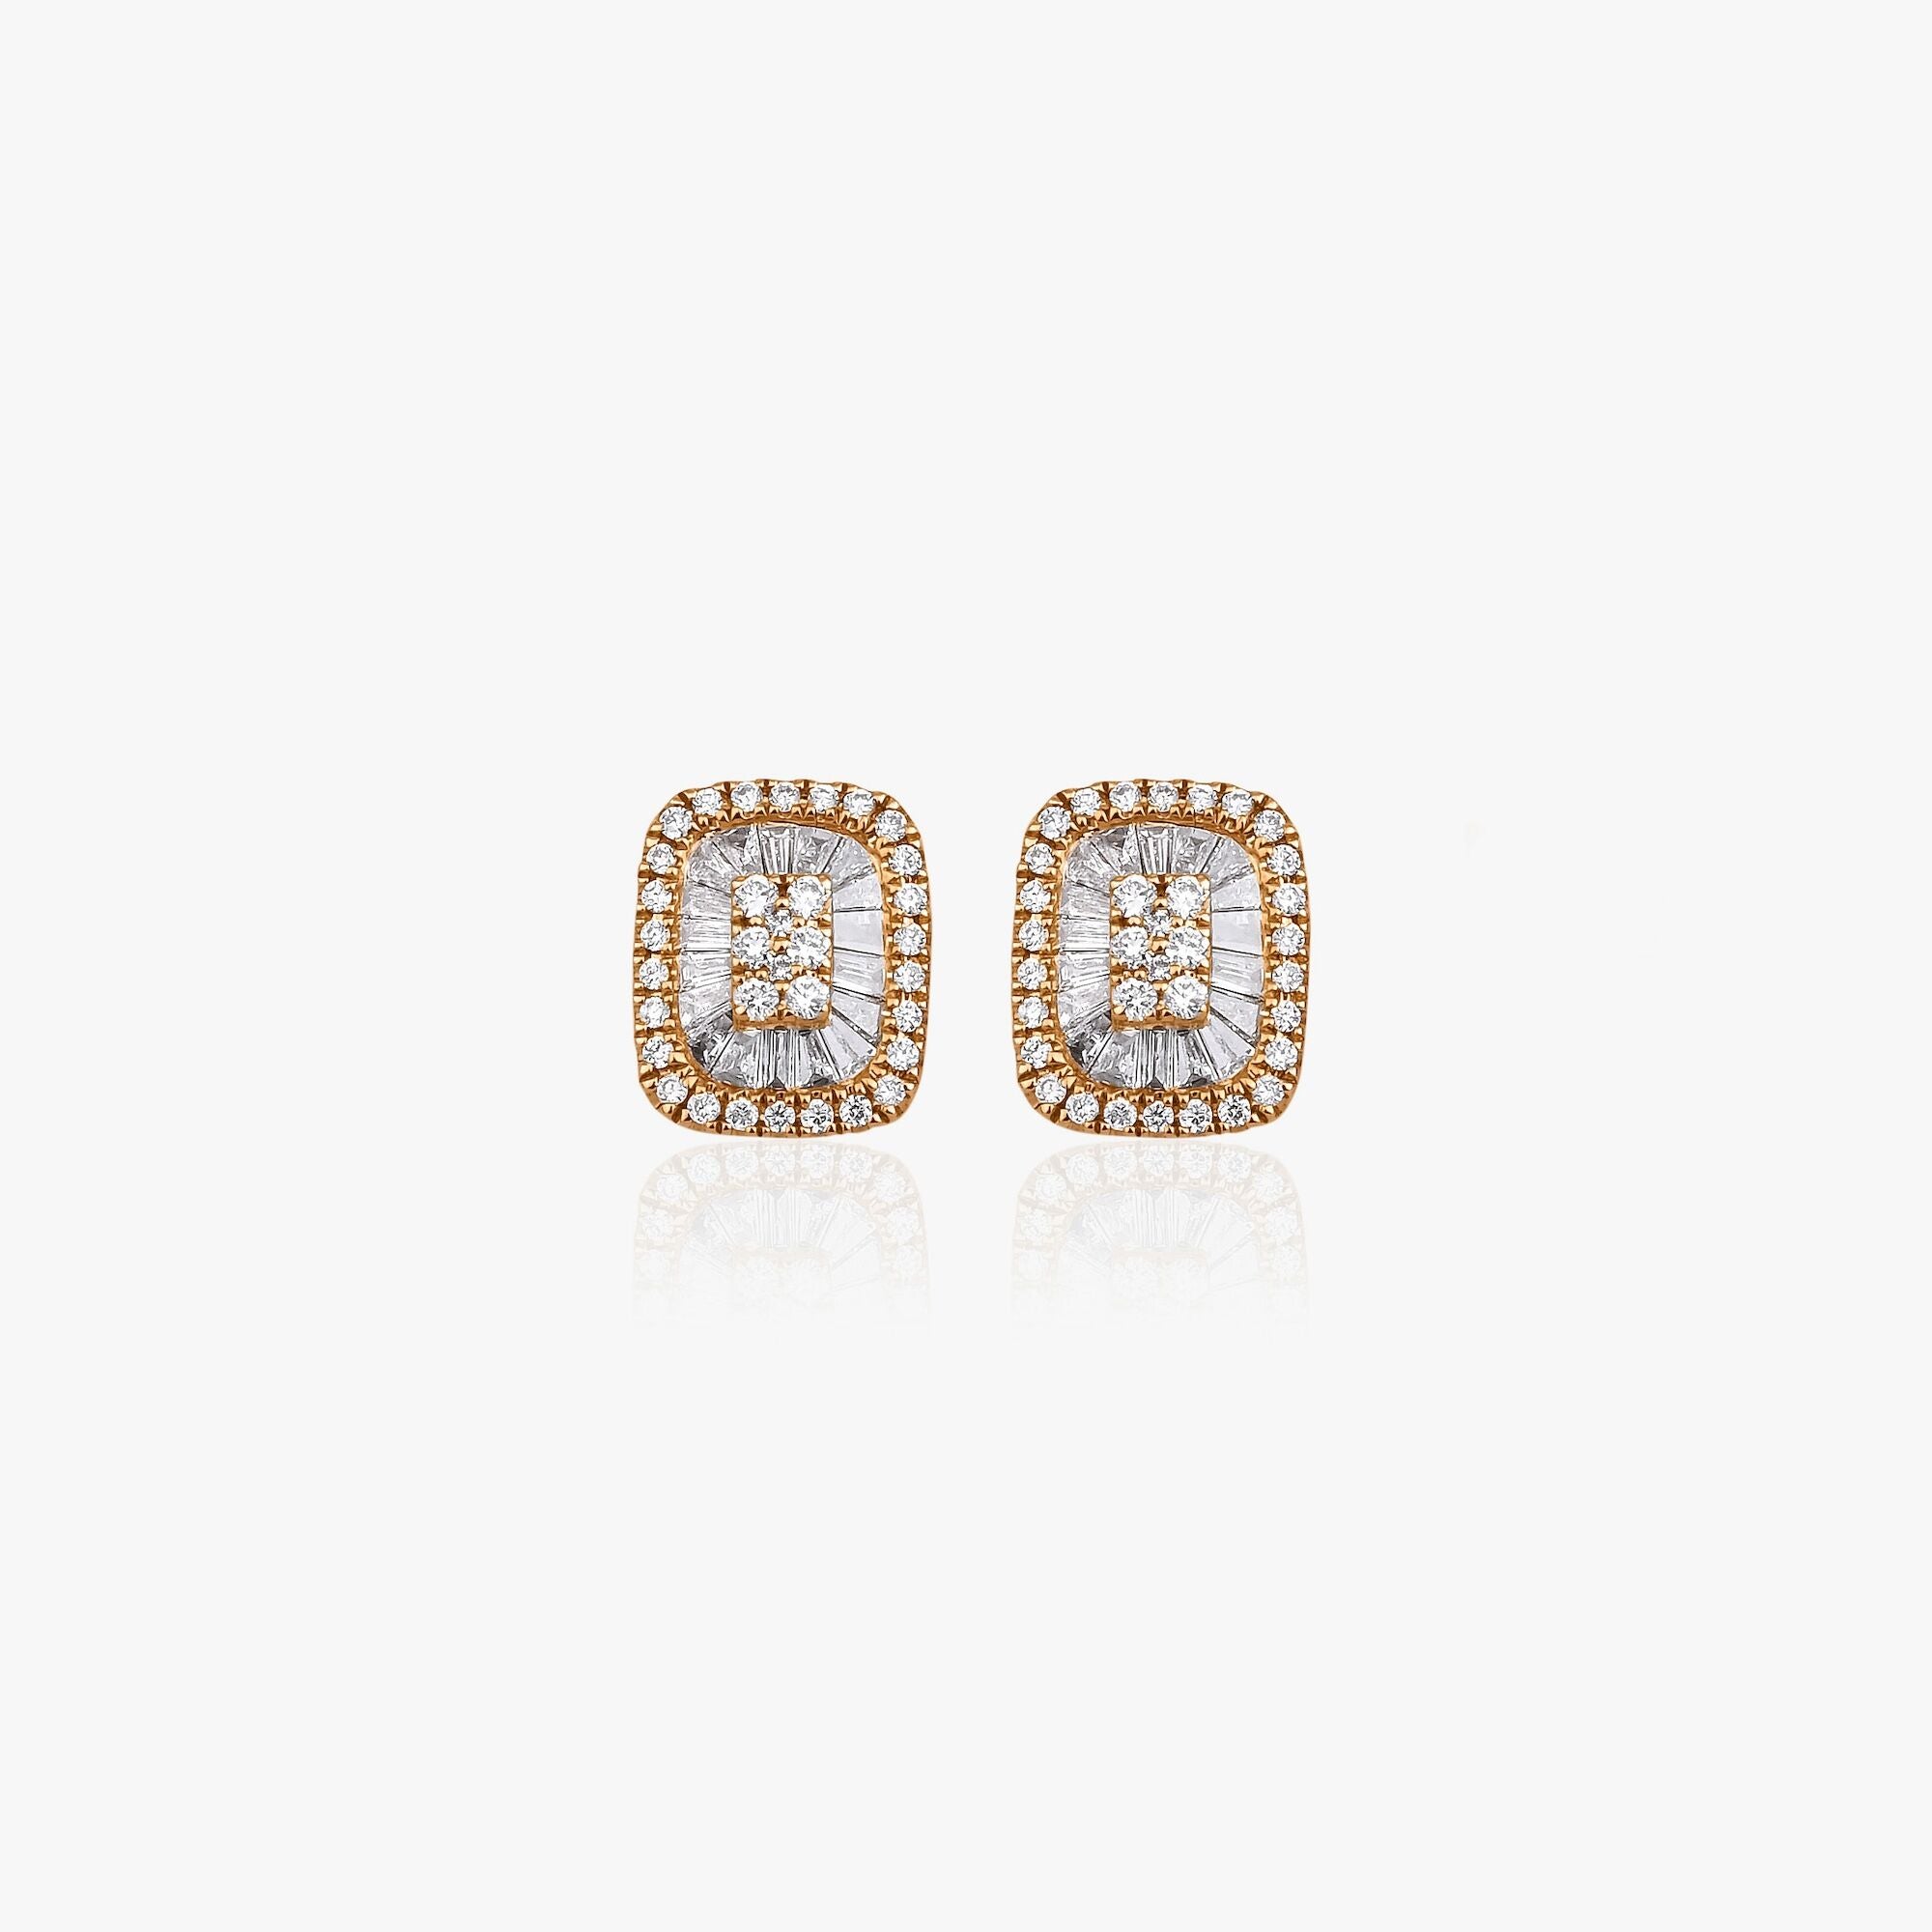 Baguette Diamond Stud Earrings in 18K Gold